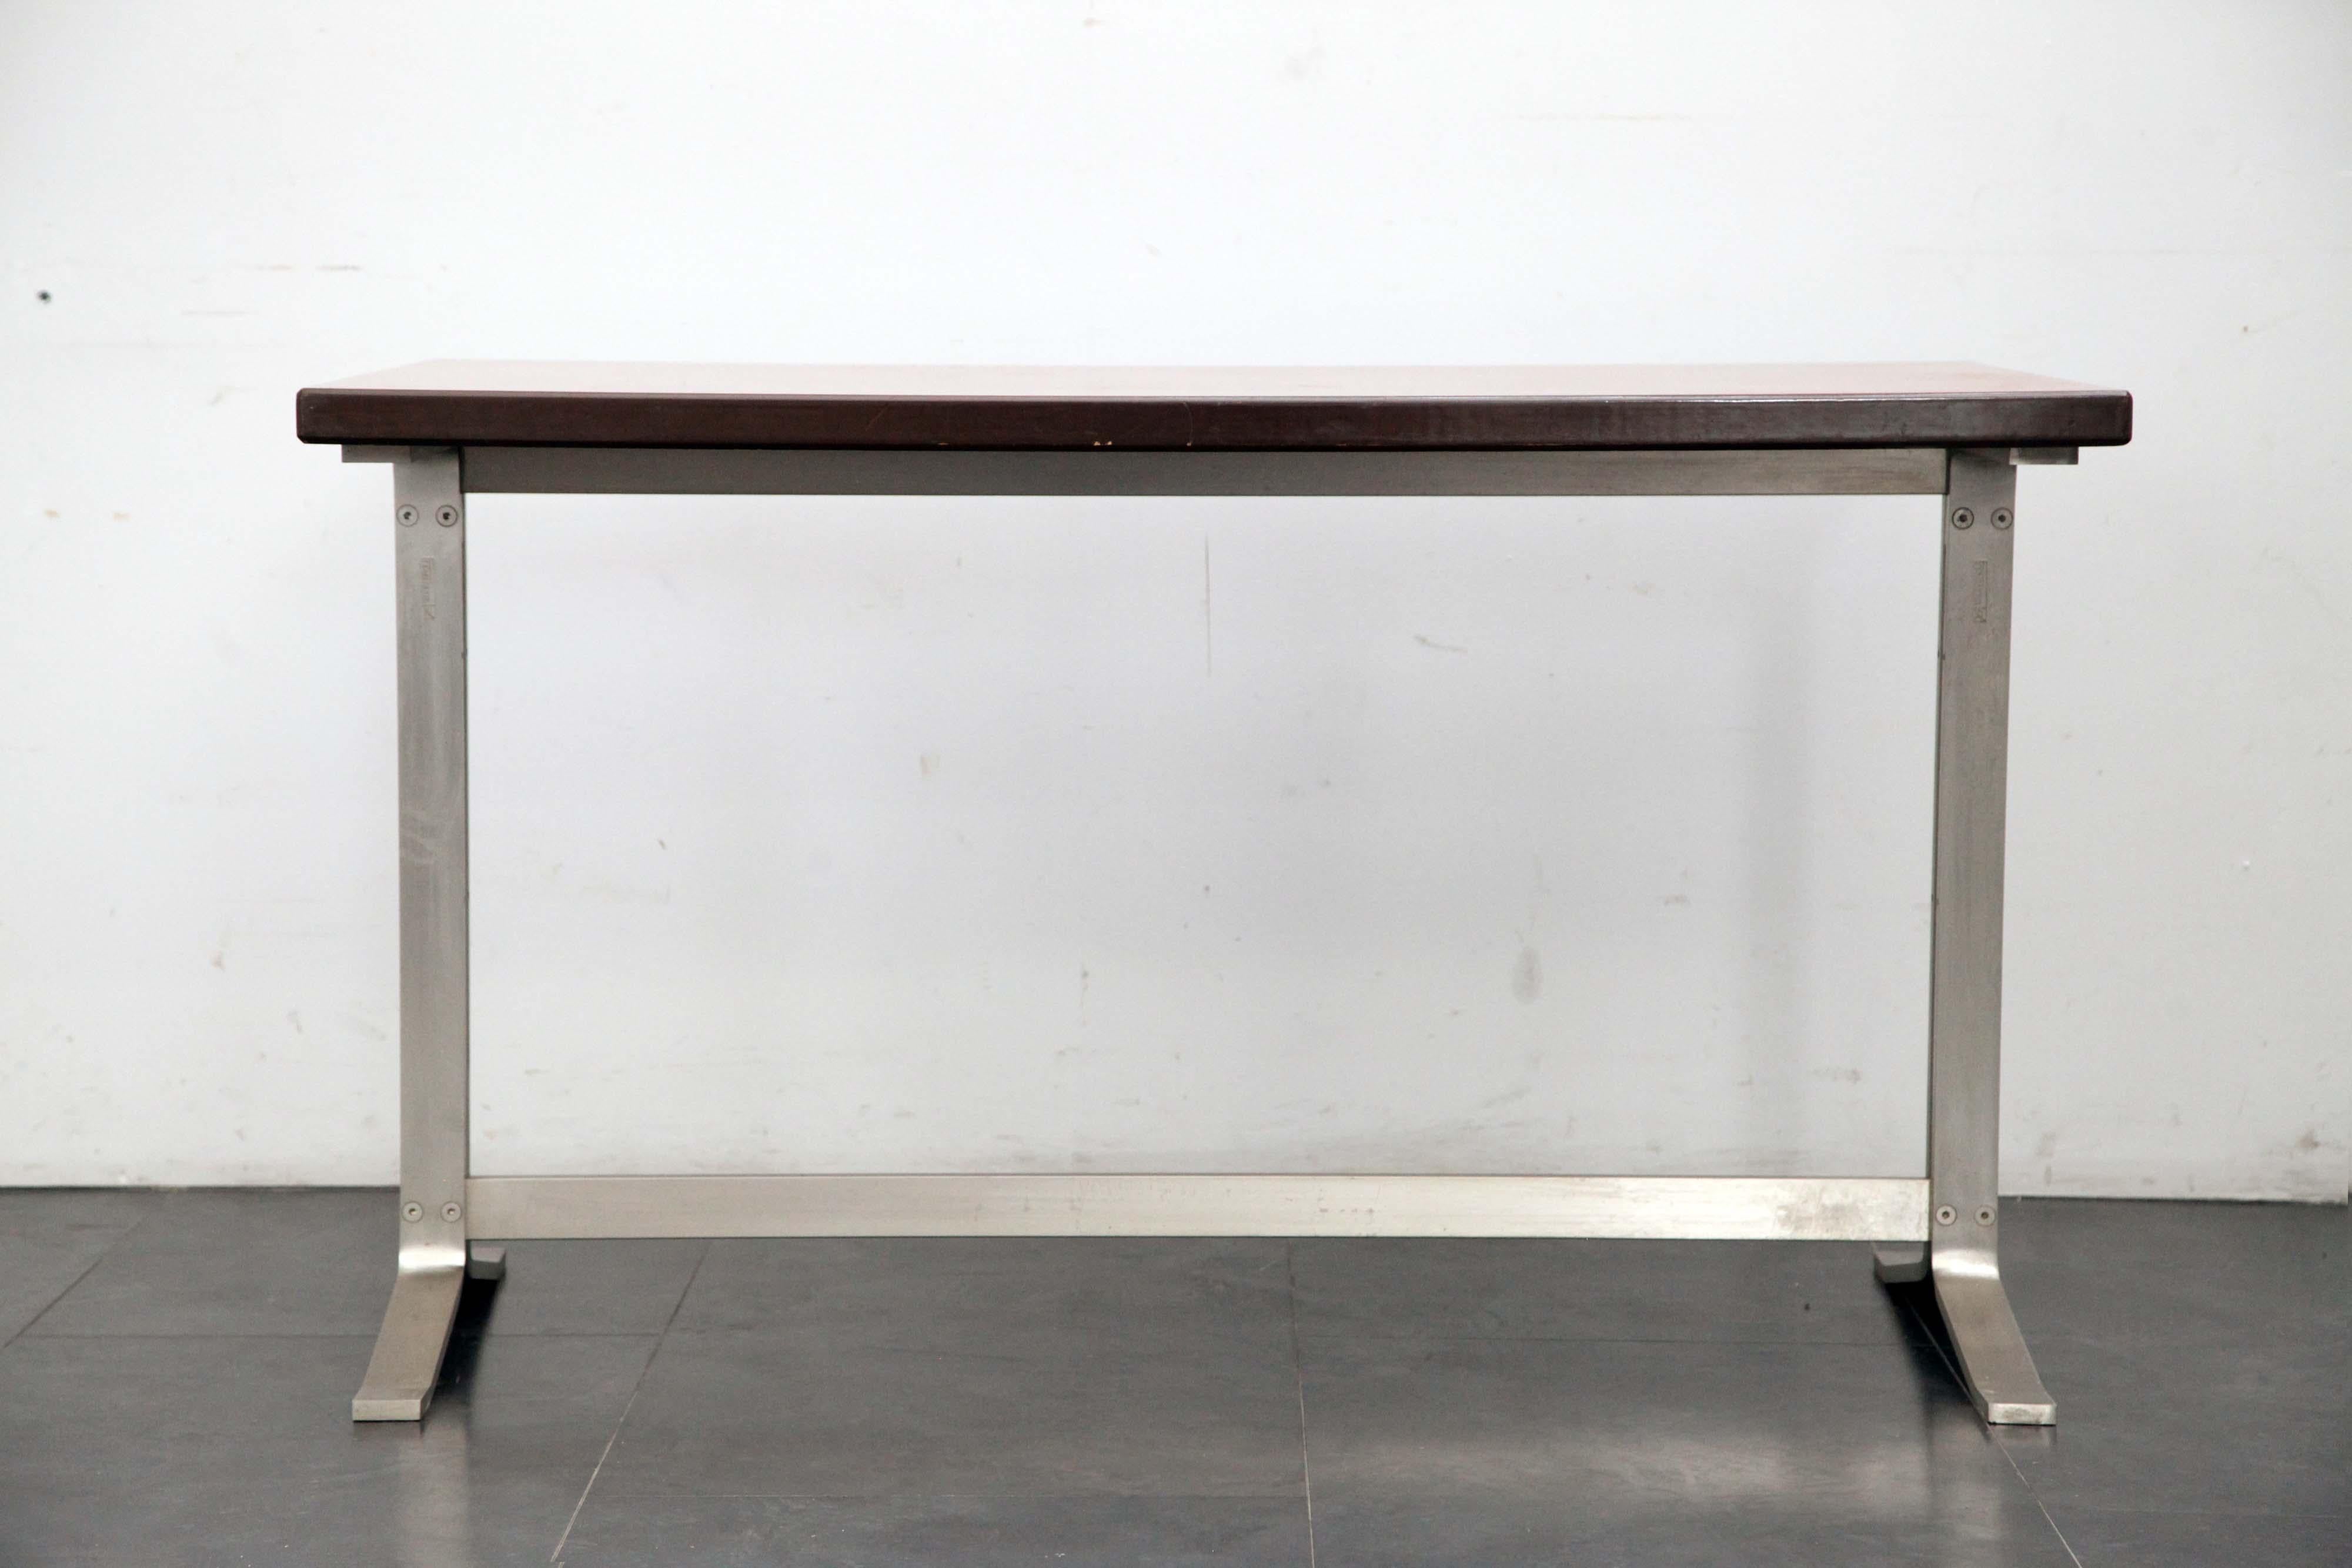 Formanova dattilo Tisch Design Gianni Moschatelli, Platte aus Kirschholz, Fuß aus dunklem Stahl, innen mit Formanova gekennzeichnet.
Die Verpackung mit Luftpolsterfolie und Kartonagen ist inbegriffen. Wenn die hölzerne Verpackung benötigt wird